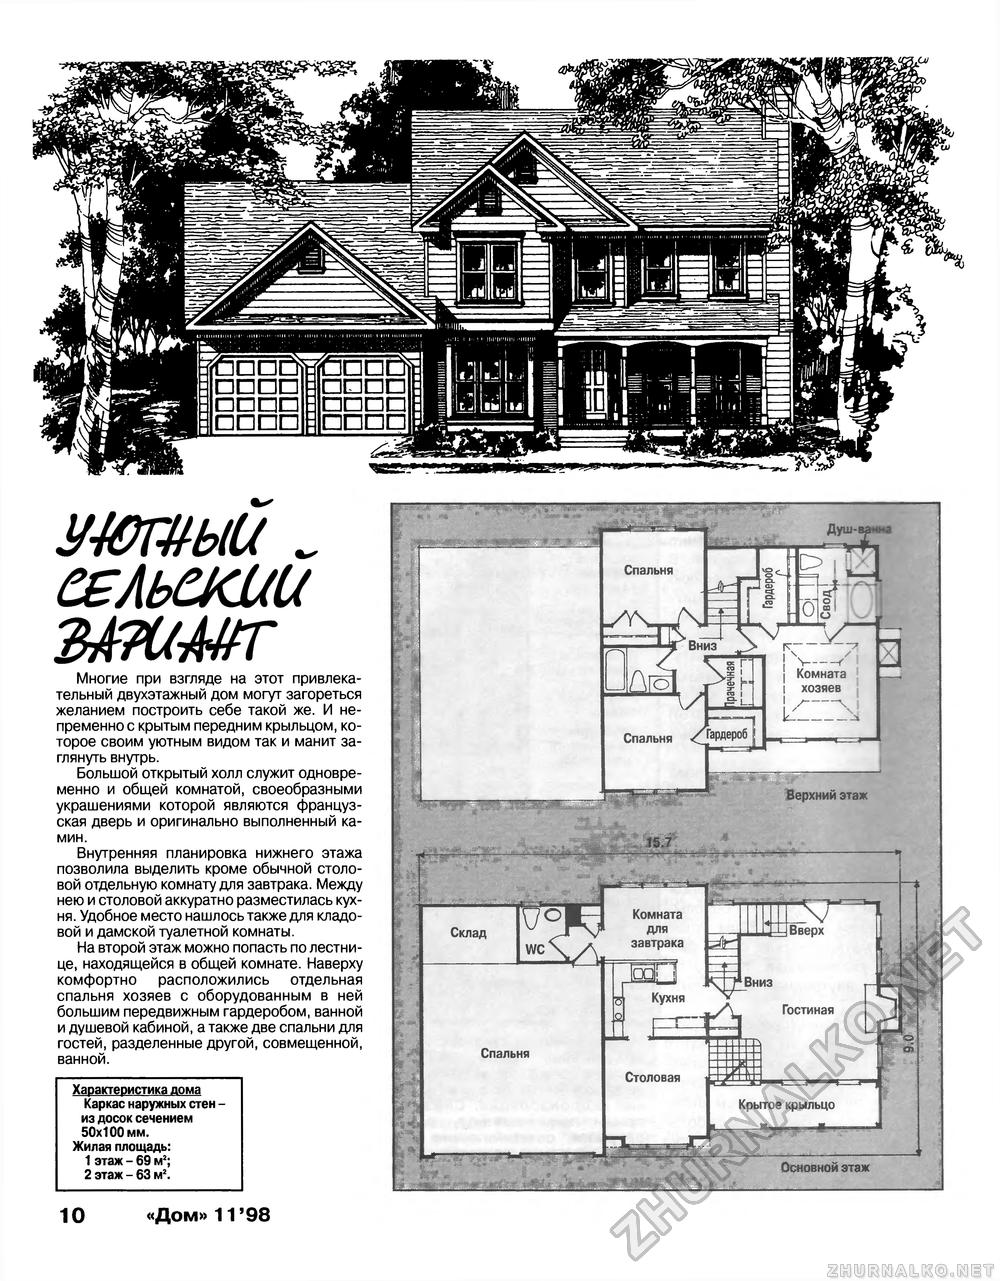 Дом 1998-11, страница 10